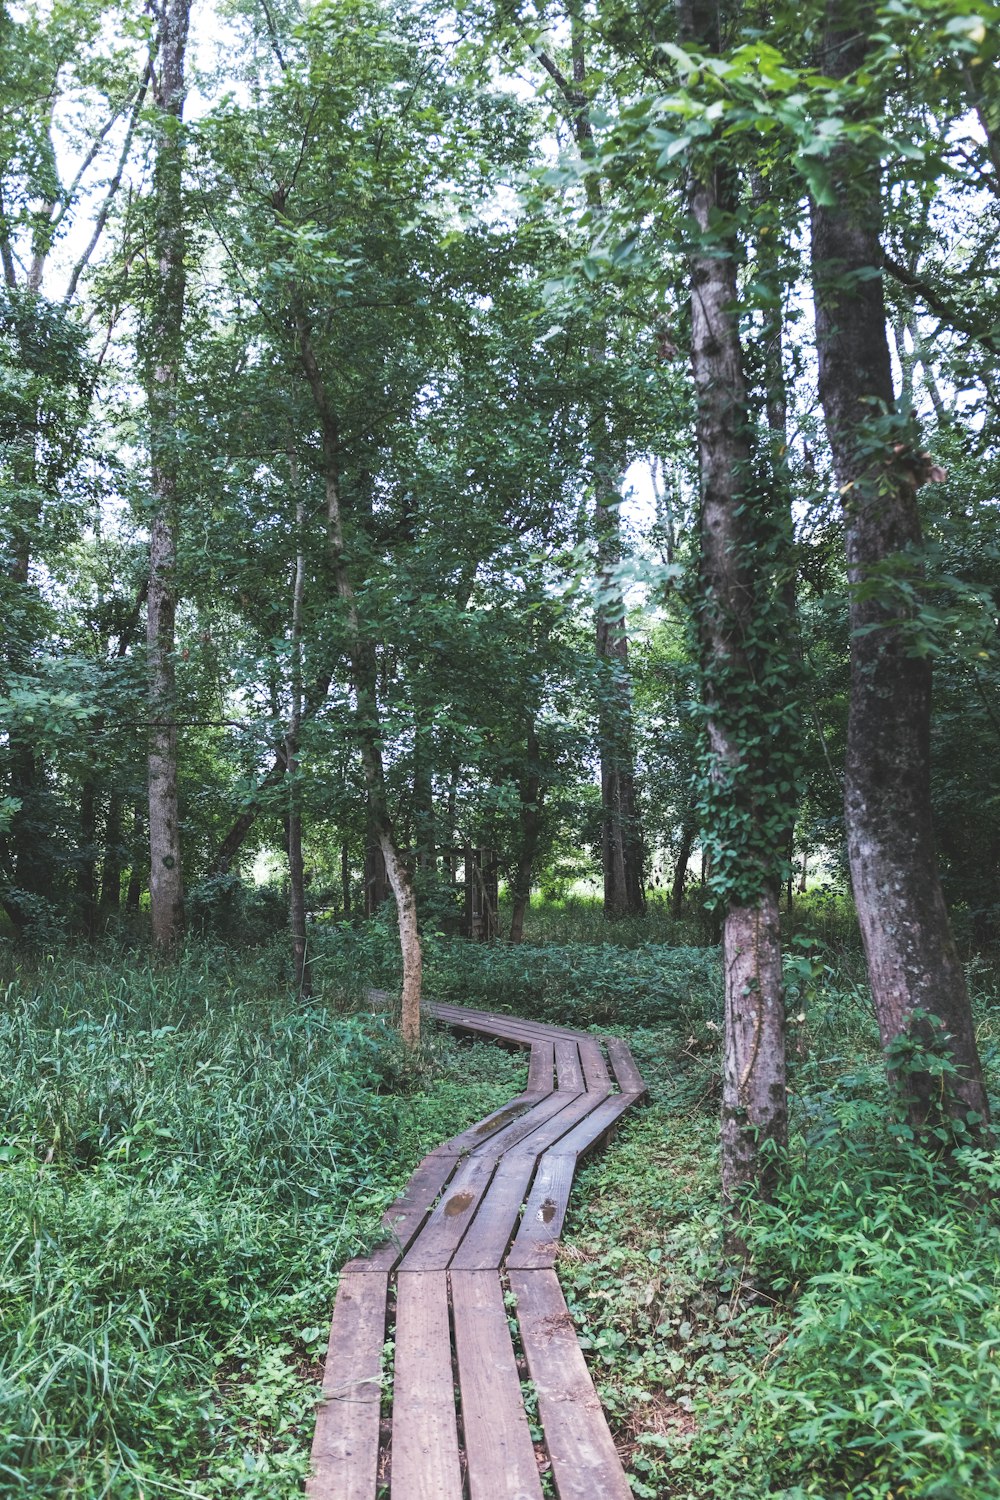 Banco de madera marrón rodeado de hierba verde y árboles durante el día